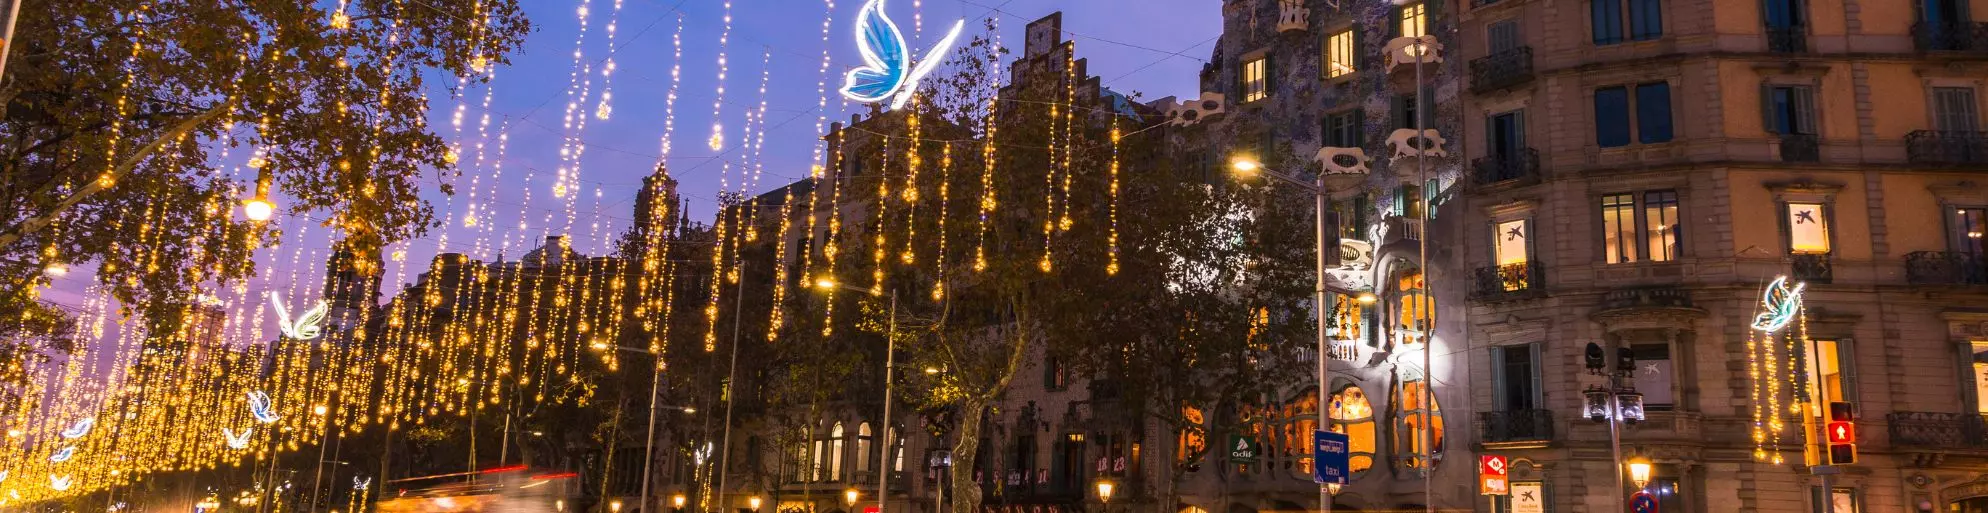 ¿Qué hacer este invierno en Barcelona? : Descubre los mejores planes  ☃️🚌